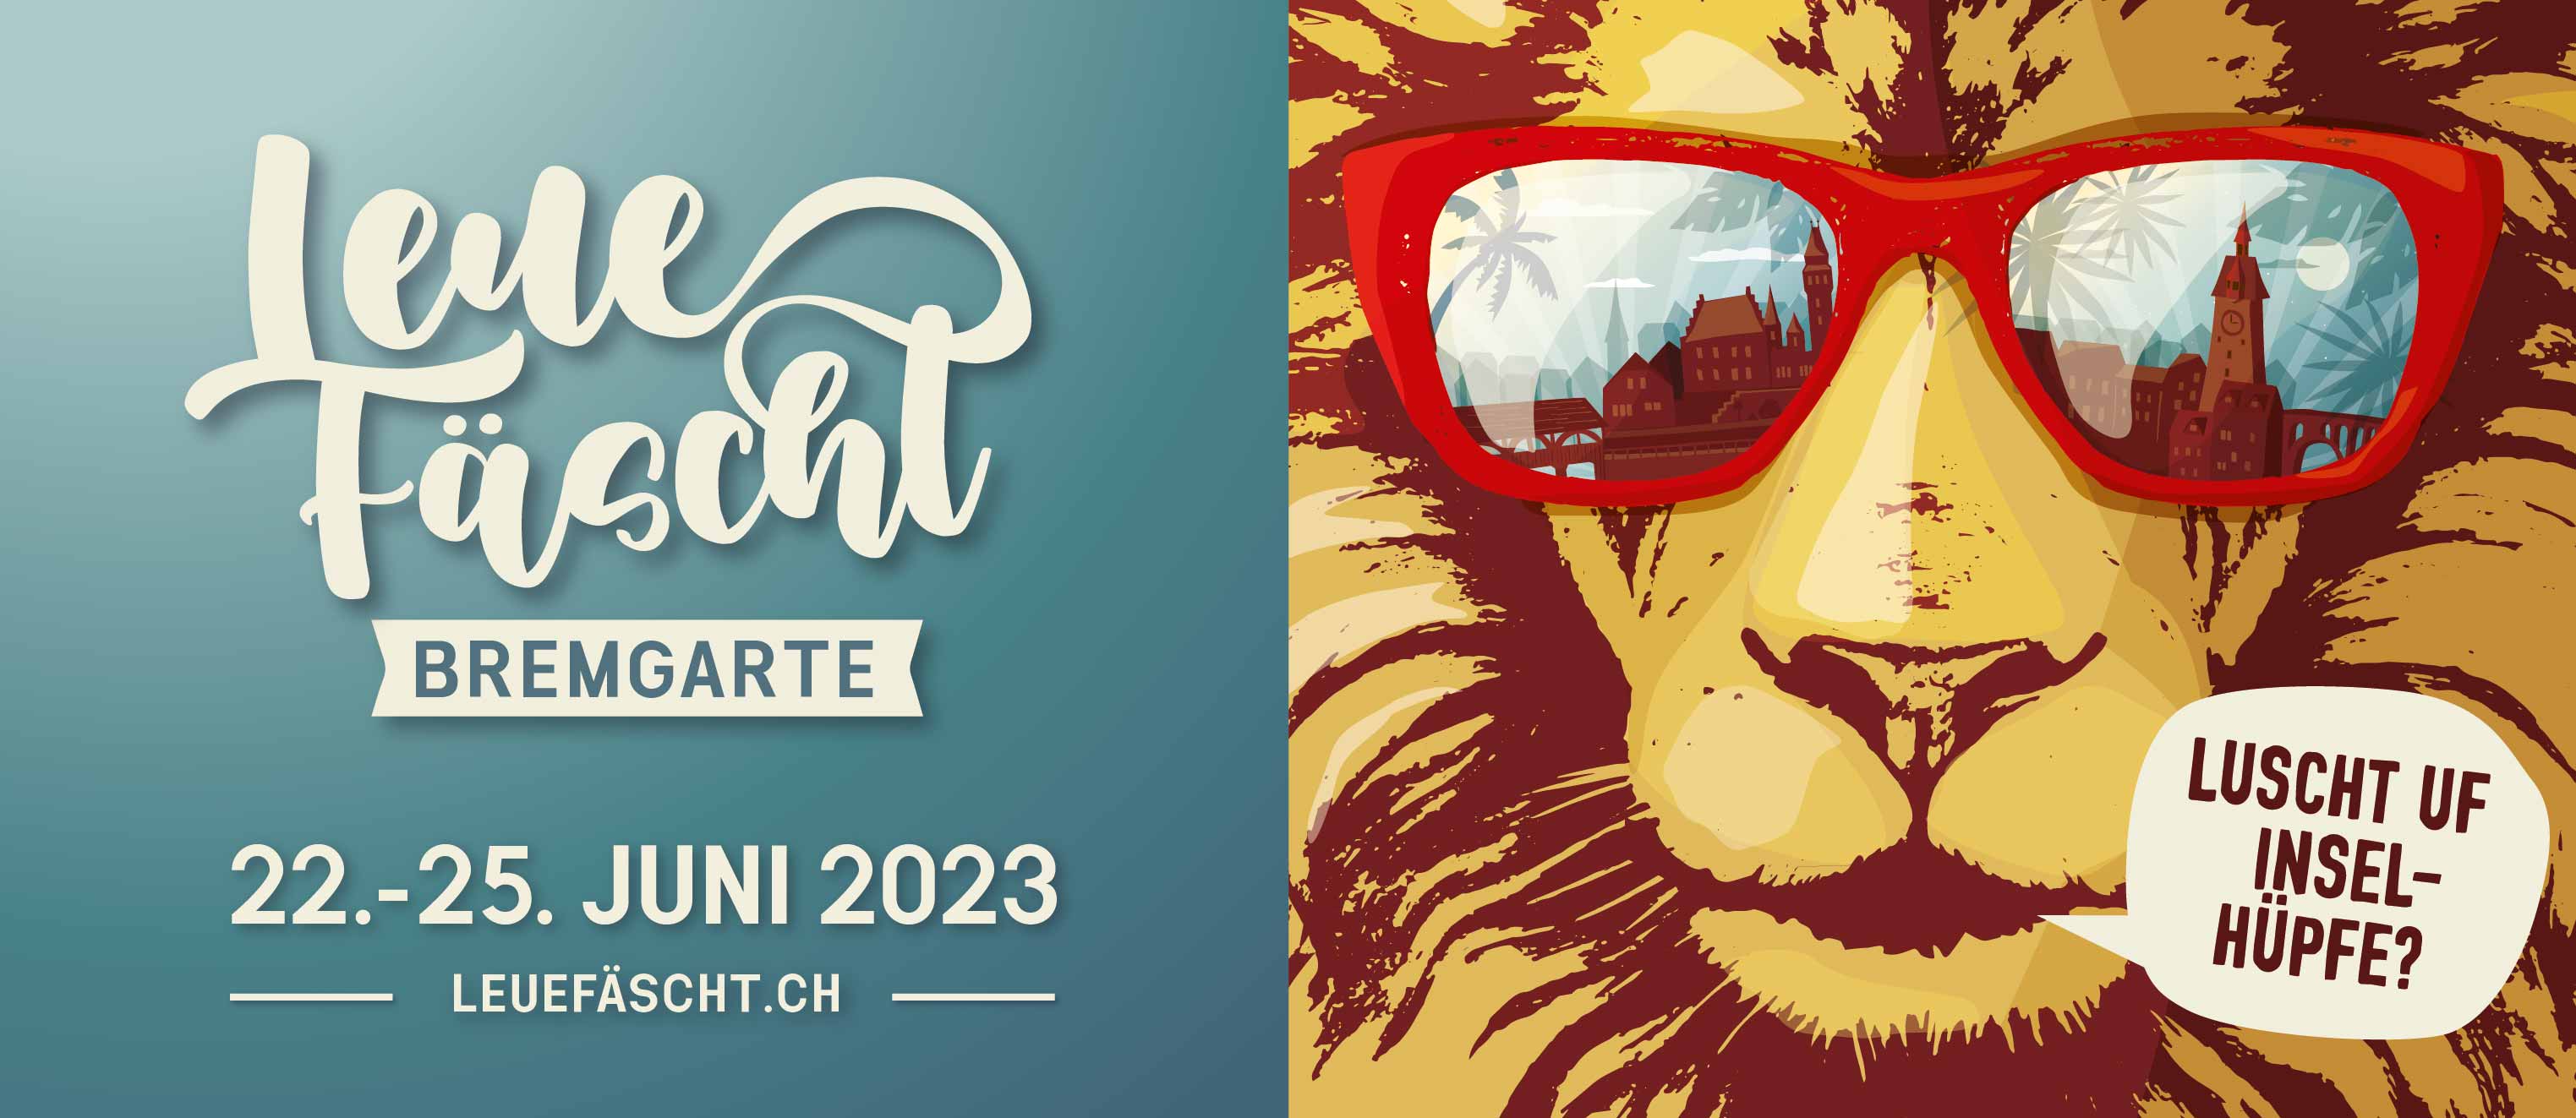 Posterbild des Leuefäscht-Löwen mit seiner coolen roten Sonnenbrille, dem Schriftzug und dem Datum des Leuefäschtes, vom 22. bis 25. Juni 2023. Kein Link vorhanden.